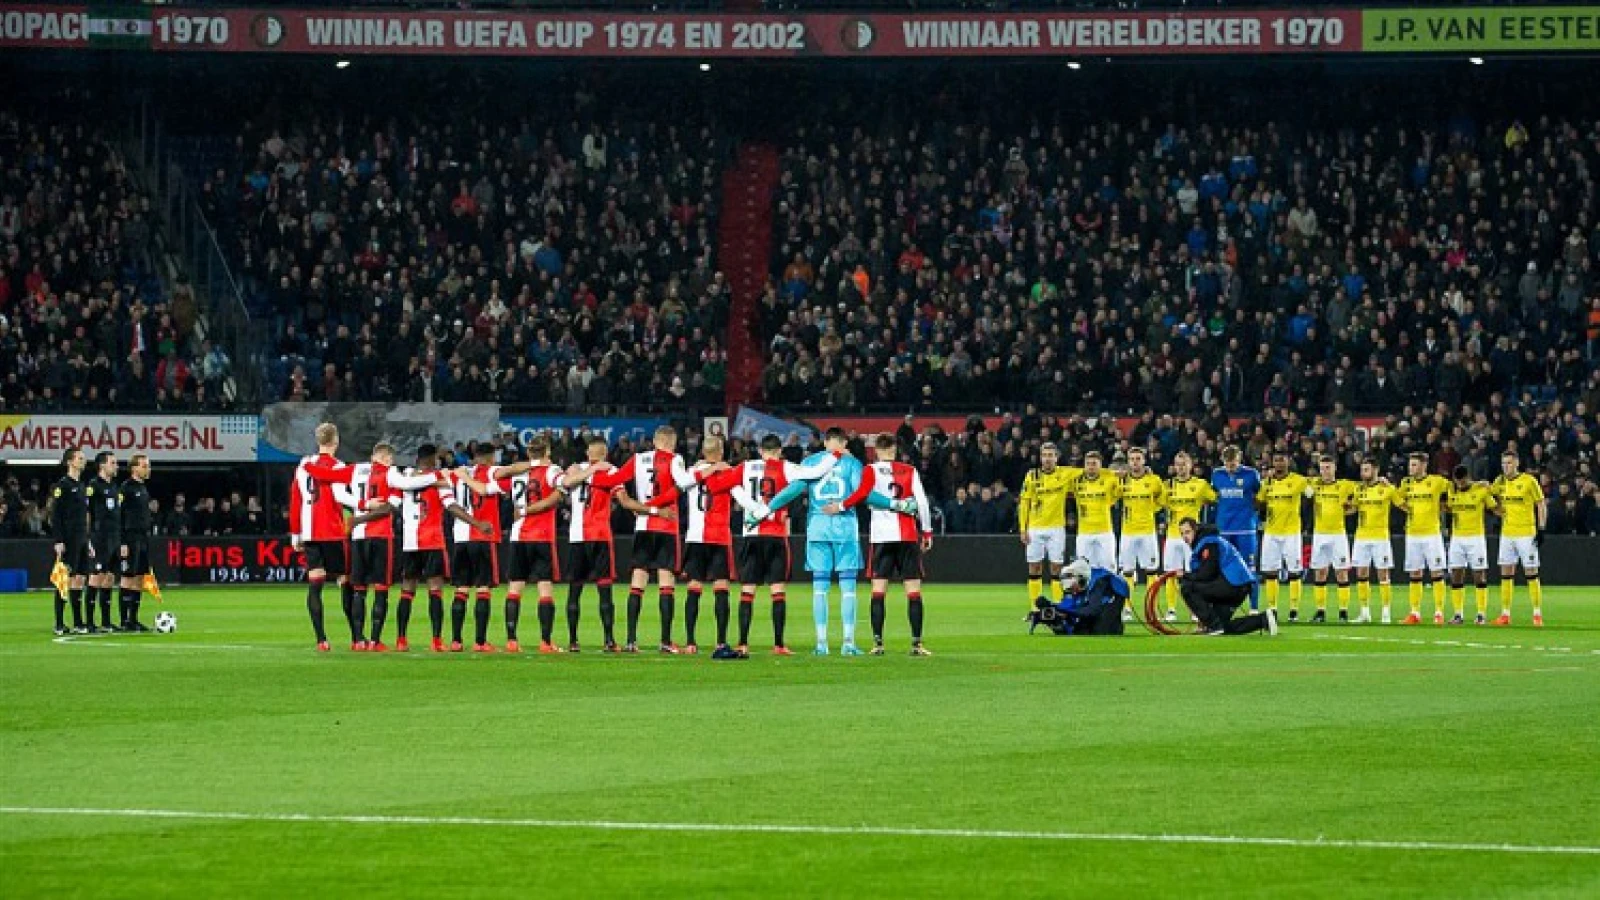 Minuut stilte voorafgaand Wolfsberger AC - Feyenoord na overlijden Paolo Rossi